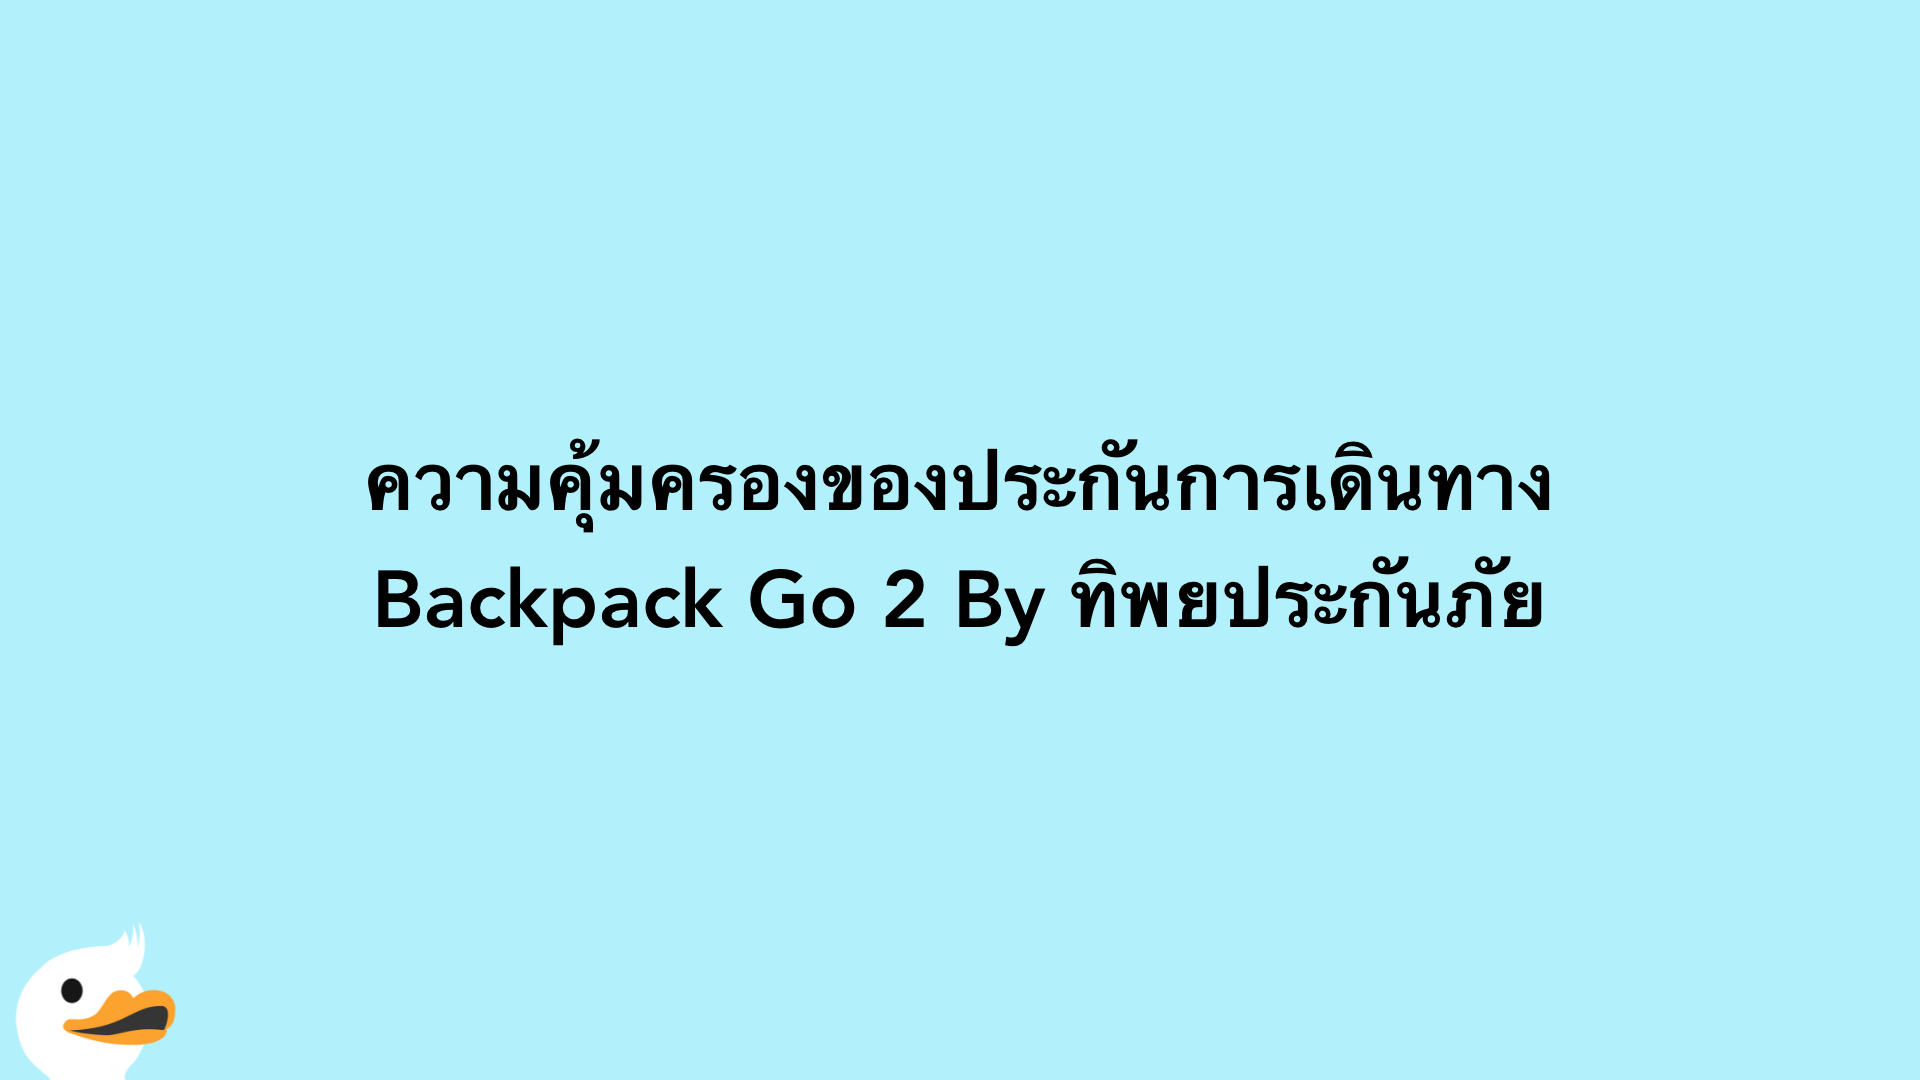 ความคุ้มครองของประกันการเดินทาง Backpack Go 2 By ทิพยประกันภัย